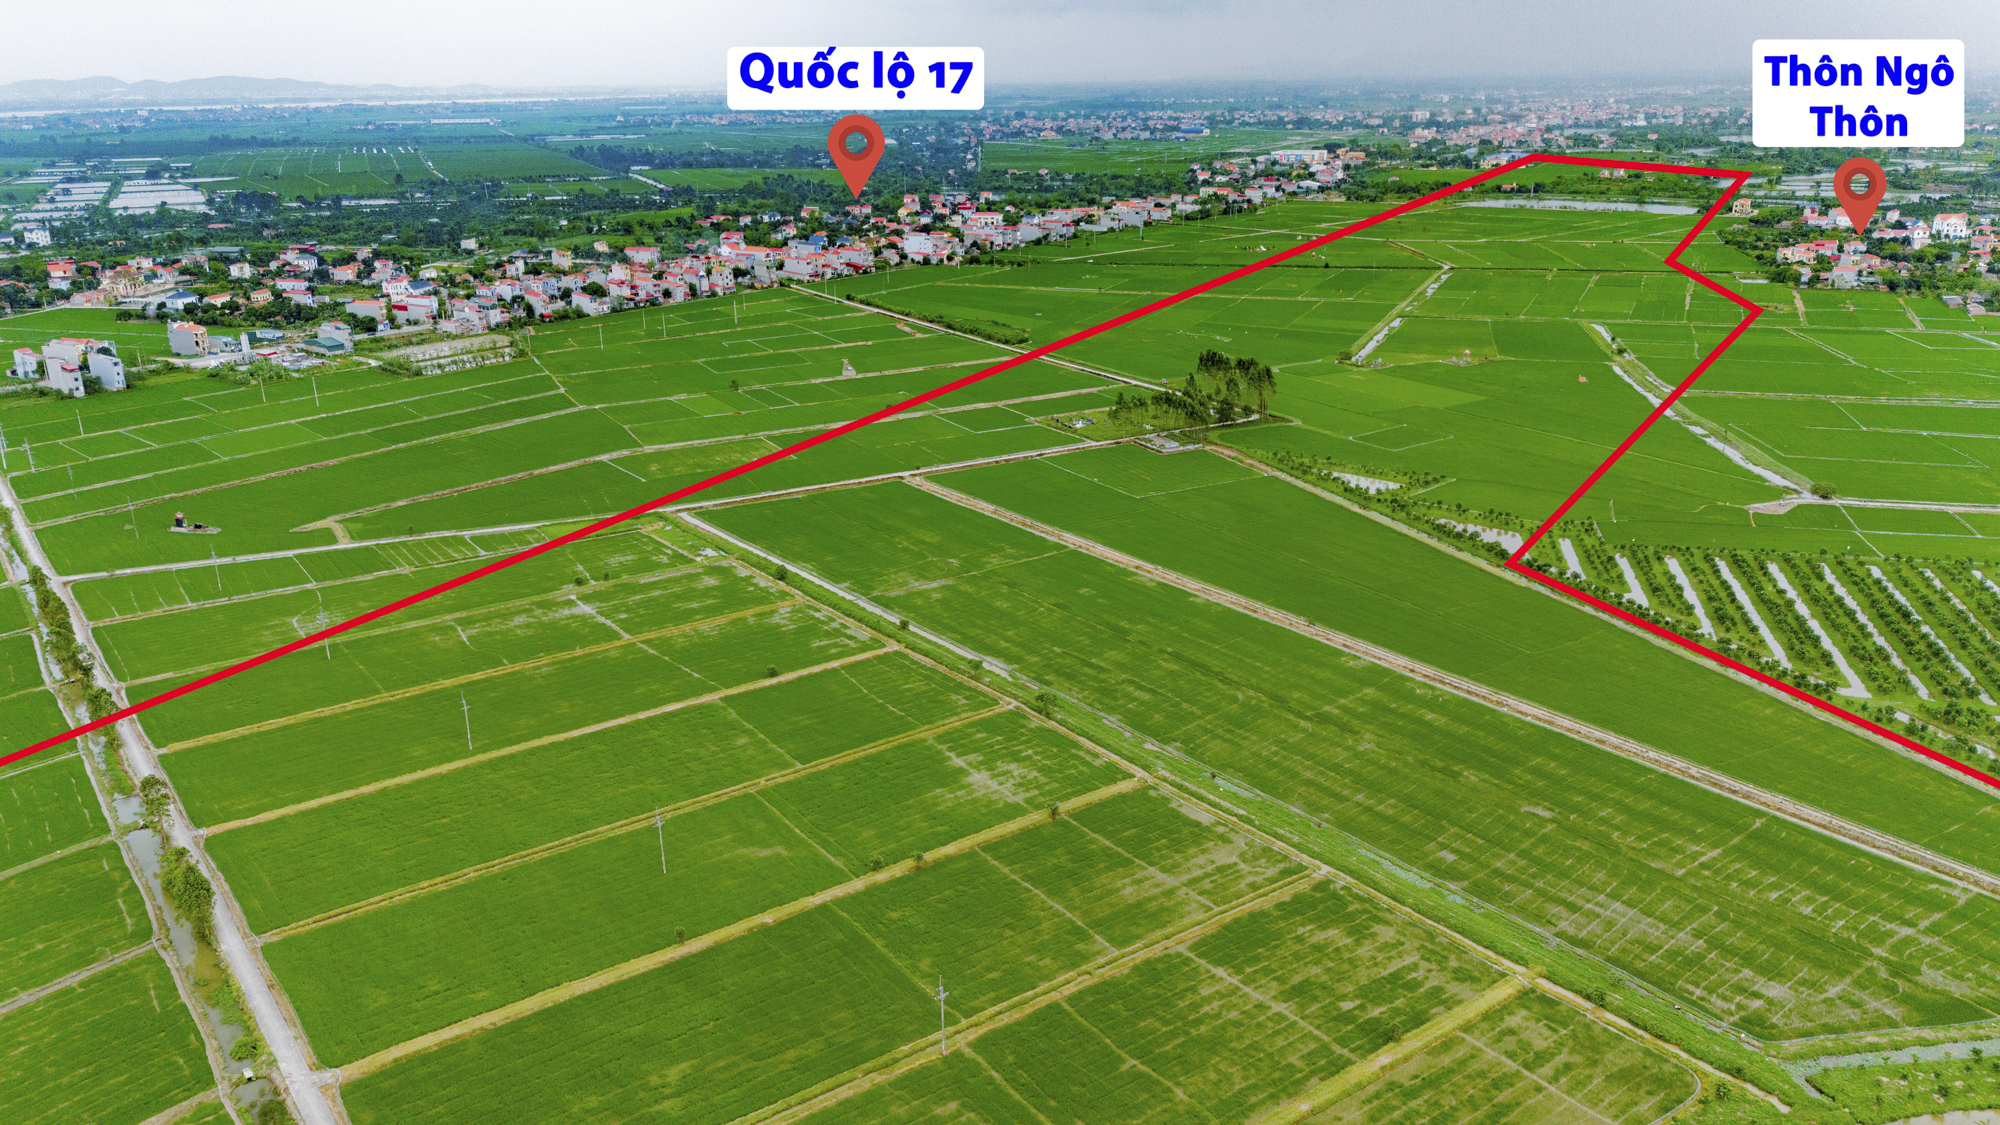 Toàn cảnh khu vực được quy hoạch làm sân bay đầu tiên của tỉnh Bắc Ninh, nằm giữa 4 thành phố, cách Hồ Gươm chỉ 40 km- Ảnh 5.